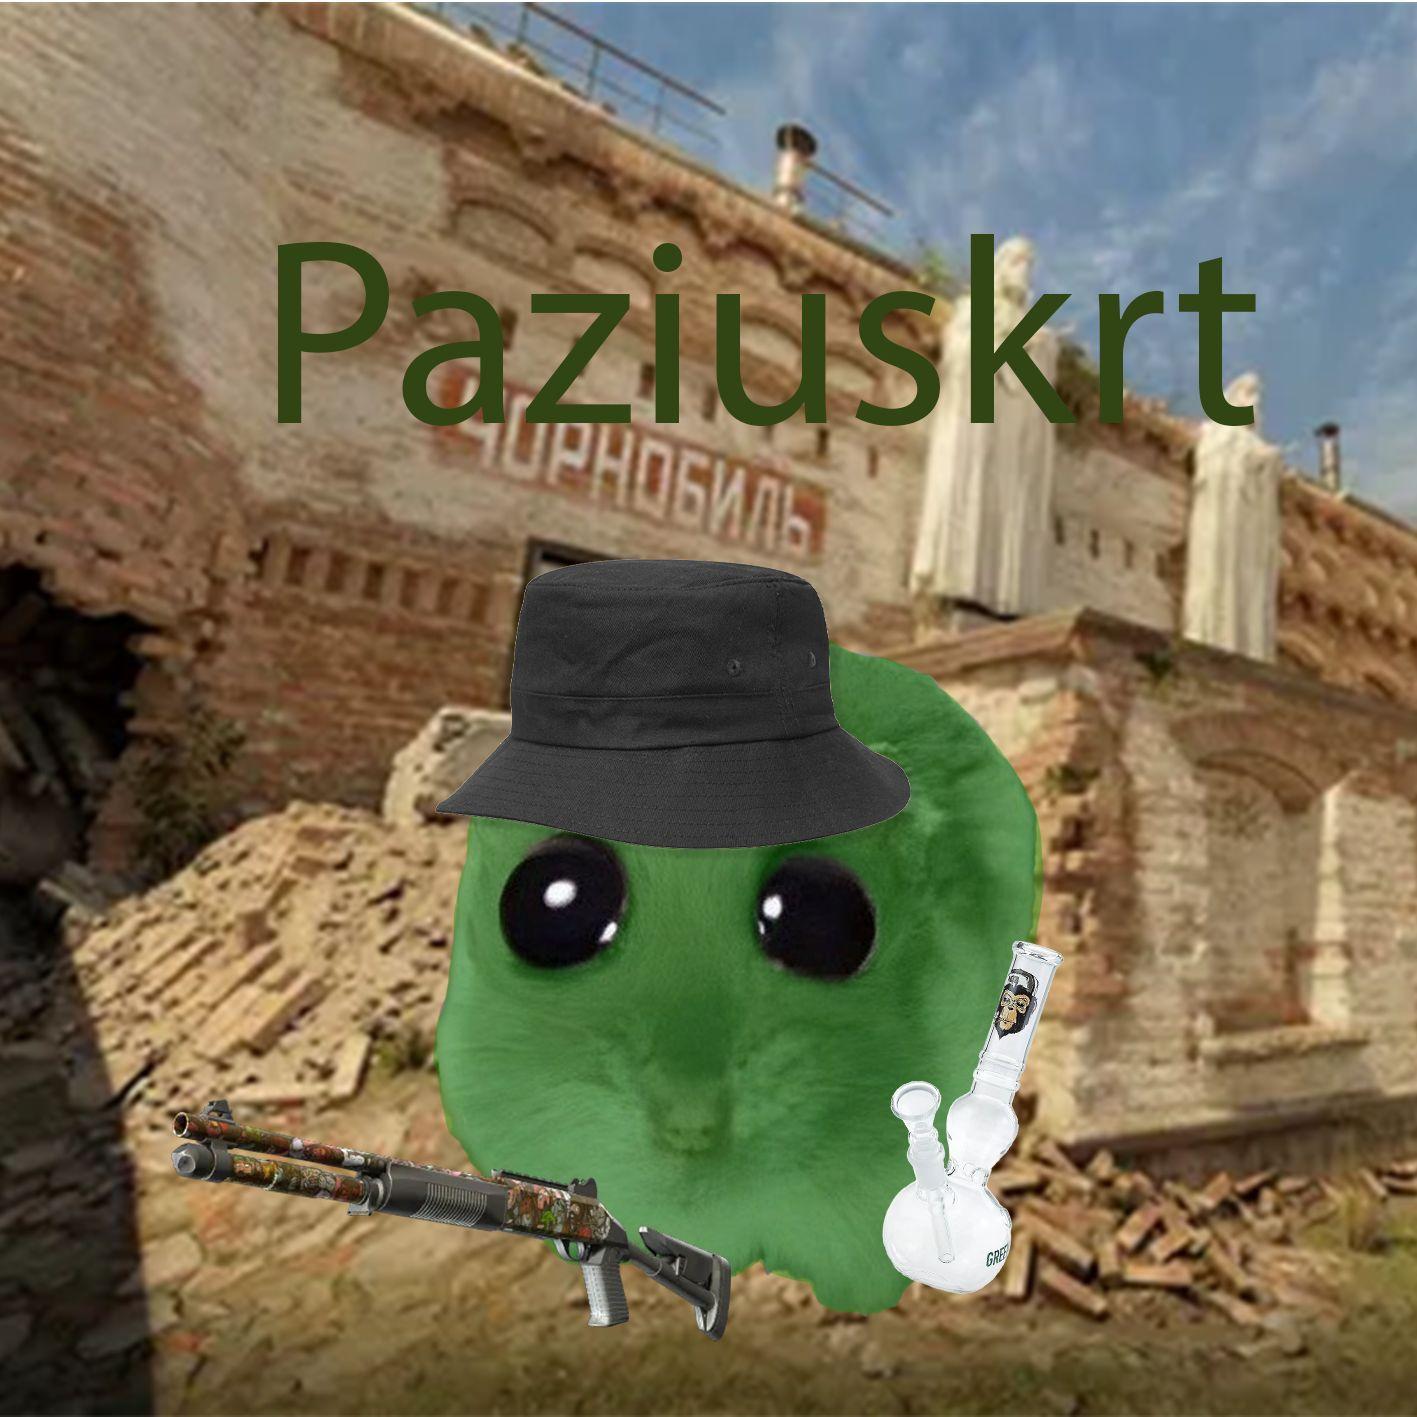 Player Paziuskrt avatar